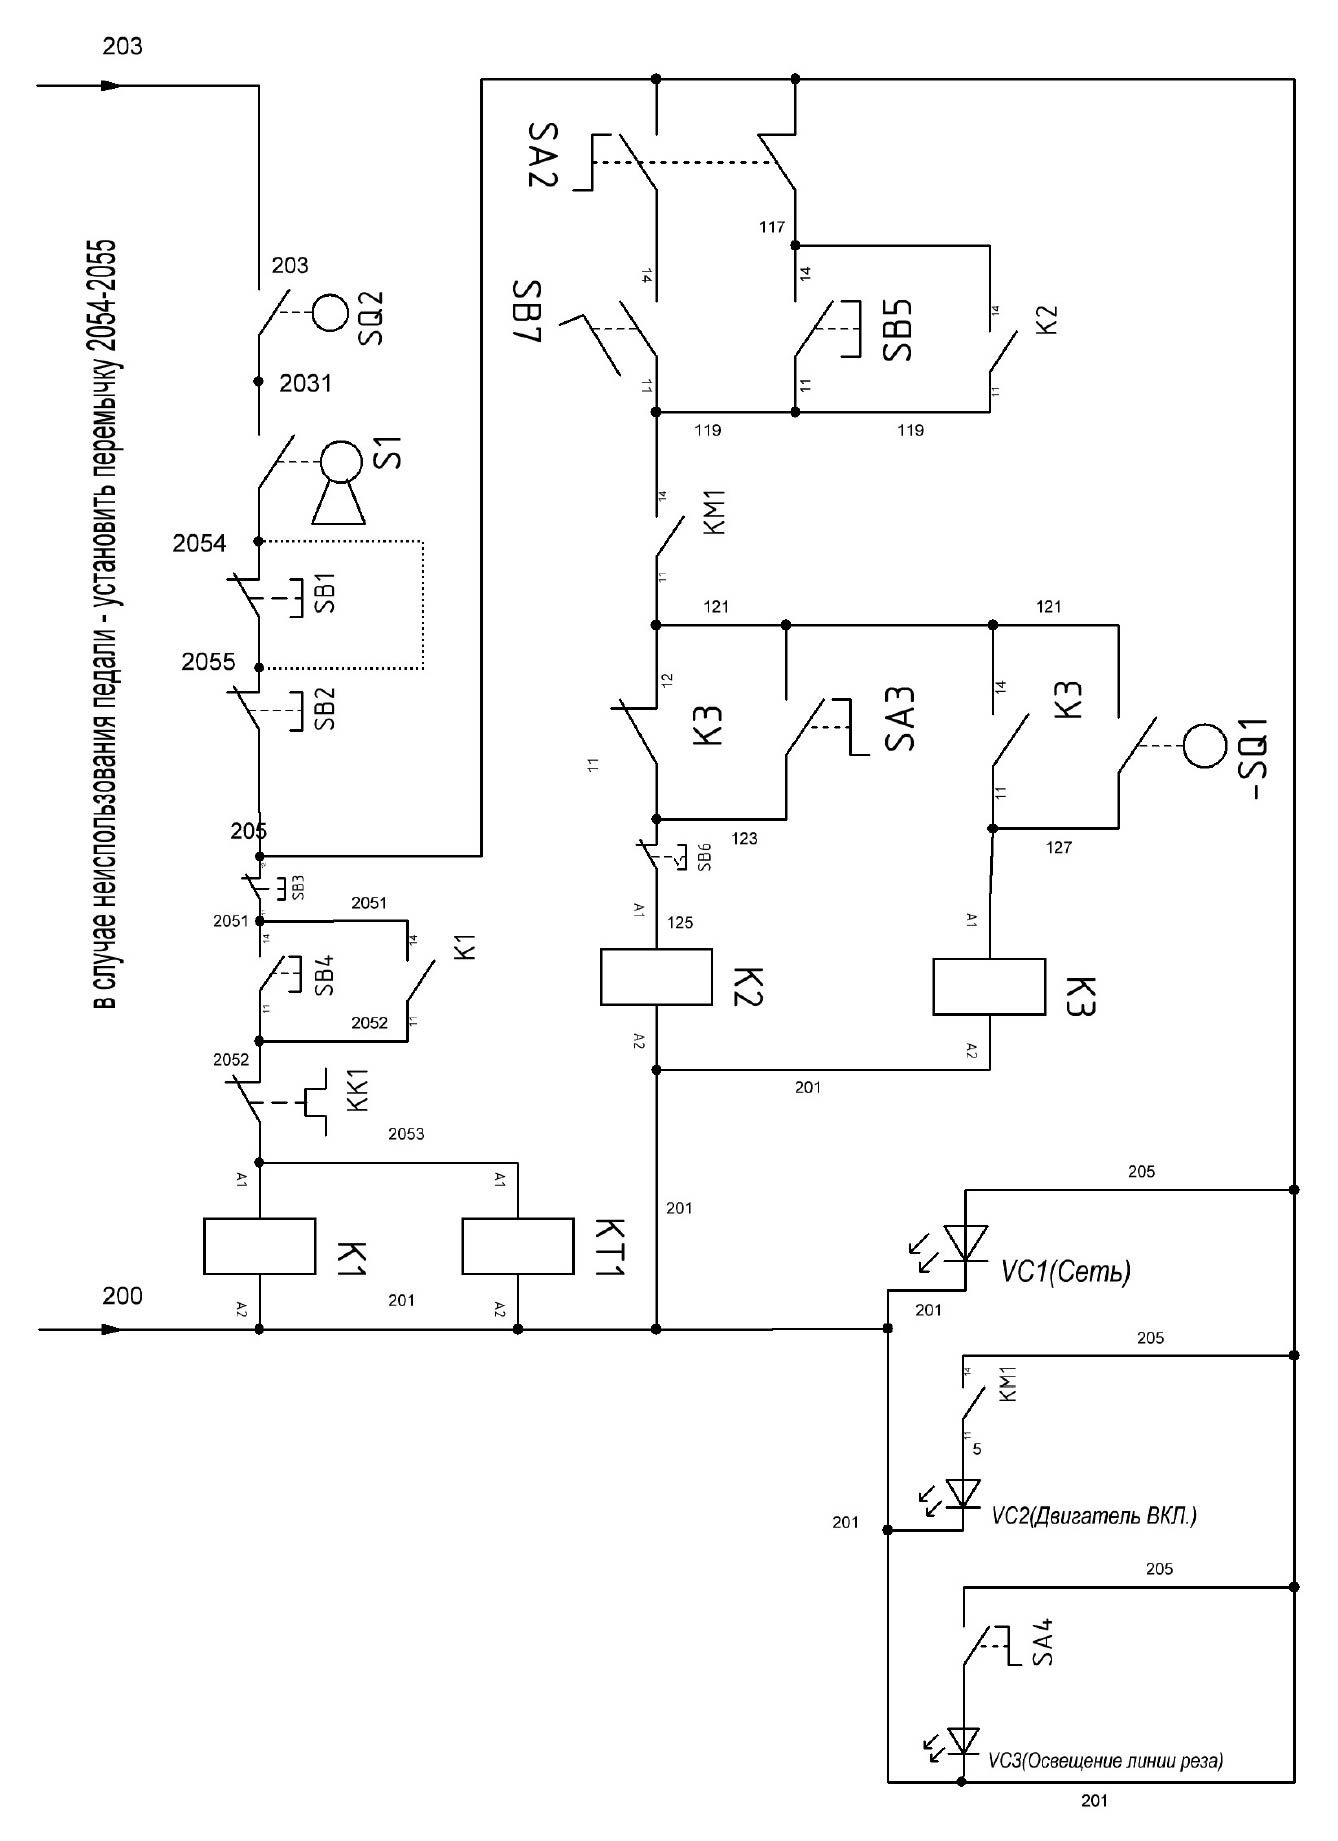 Принципиальная электрическая схема управления ножниц электромеханических МНГ-16